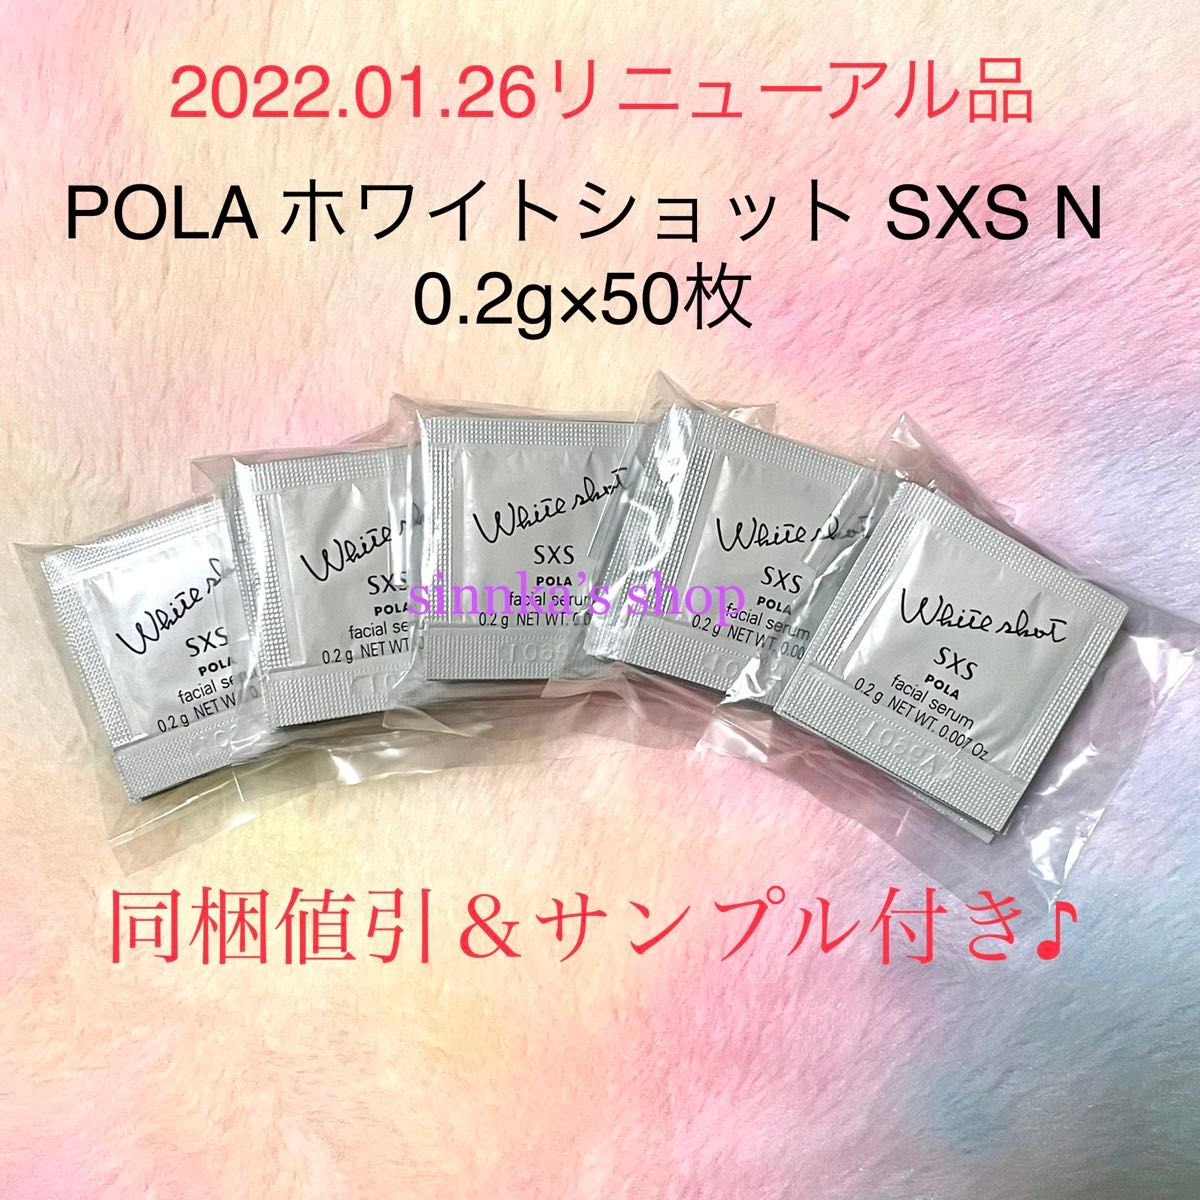 ★新品★ POLA ホワイトショット SXS N 50包 サンプル